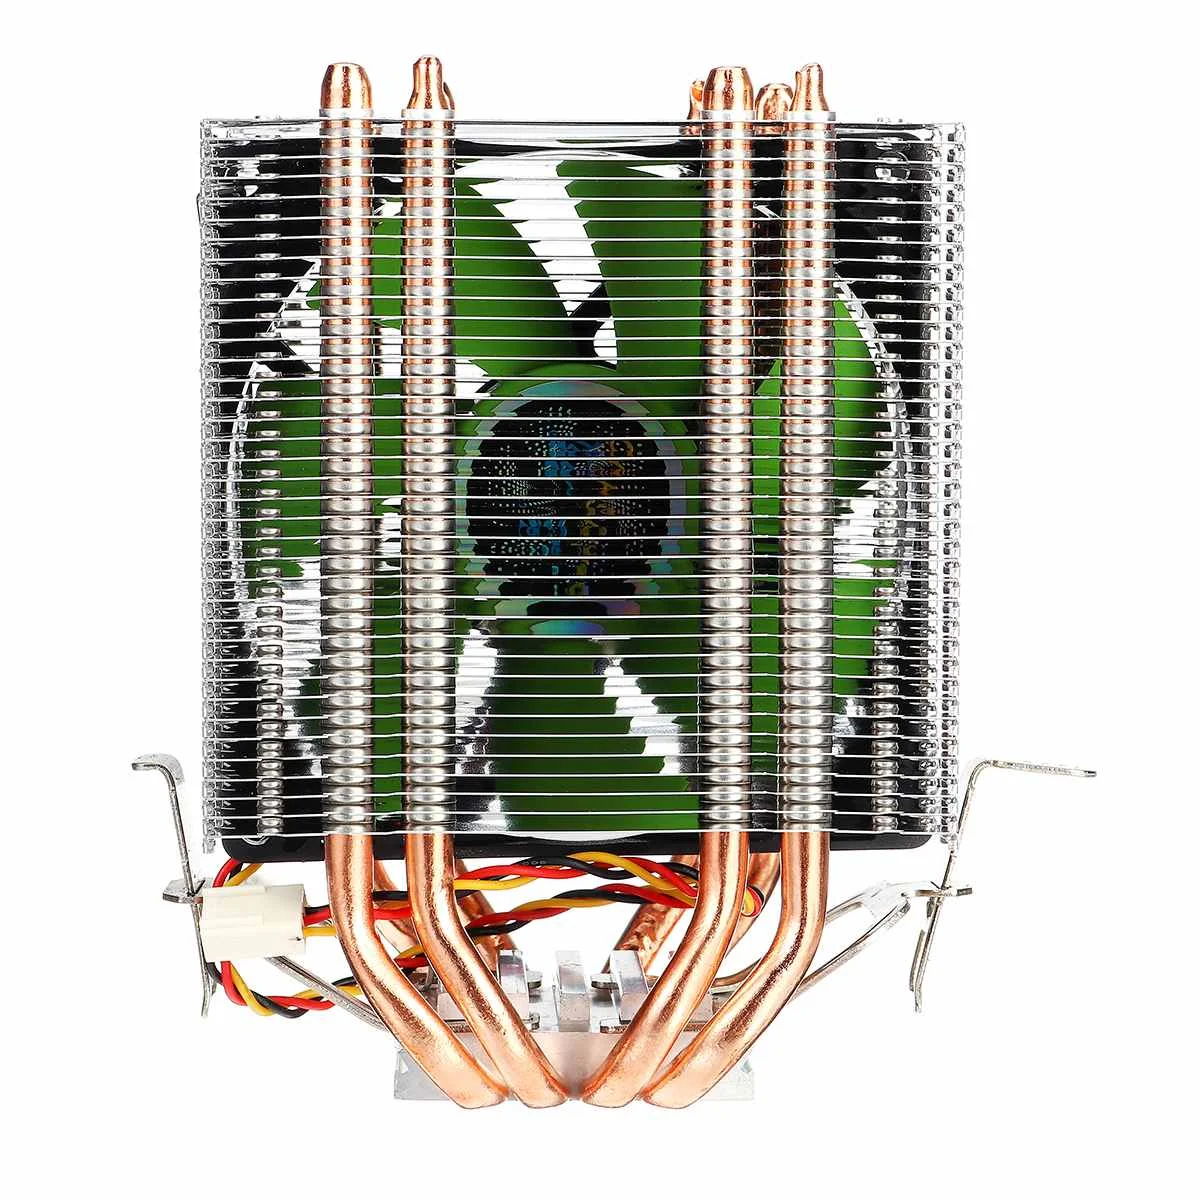 Двойной для настольных компьютеров, Процессор Кулер 4 теплопроводов холодильник 3pin радиатор тихий вентилятор охлаждающий вентилятор кулер для Intel LGA 775/1150/1151/1155/1156/1366 AMD - Цвет лезвия: Зеленый